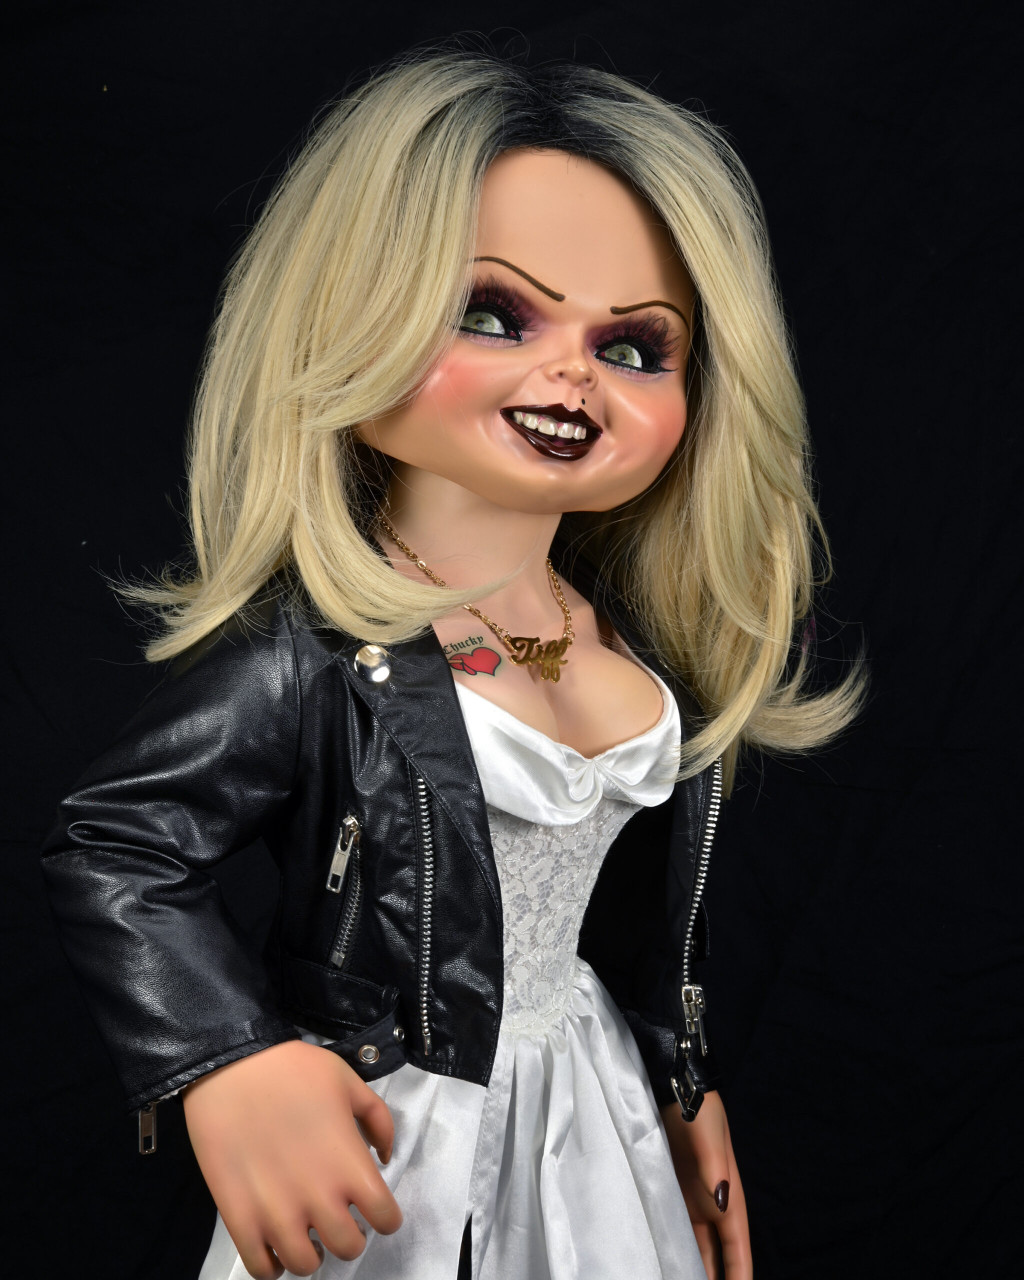 NECA #42117 Tiffany 1:1 Scale Life Size Bad Gals Replica Doll Bride of Chucky Figure 5